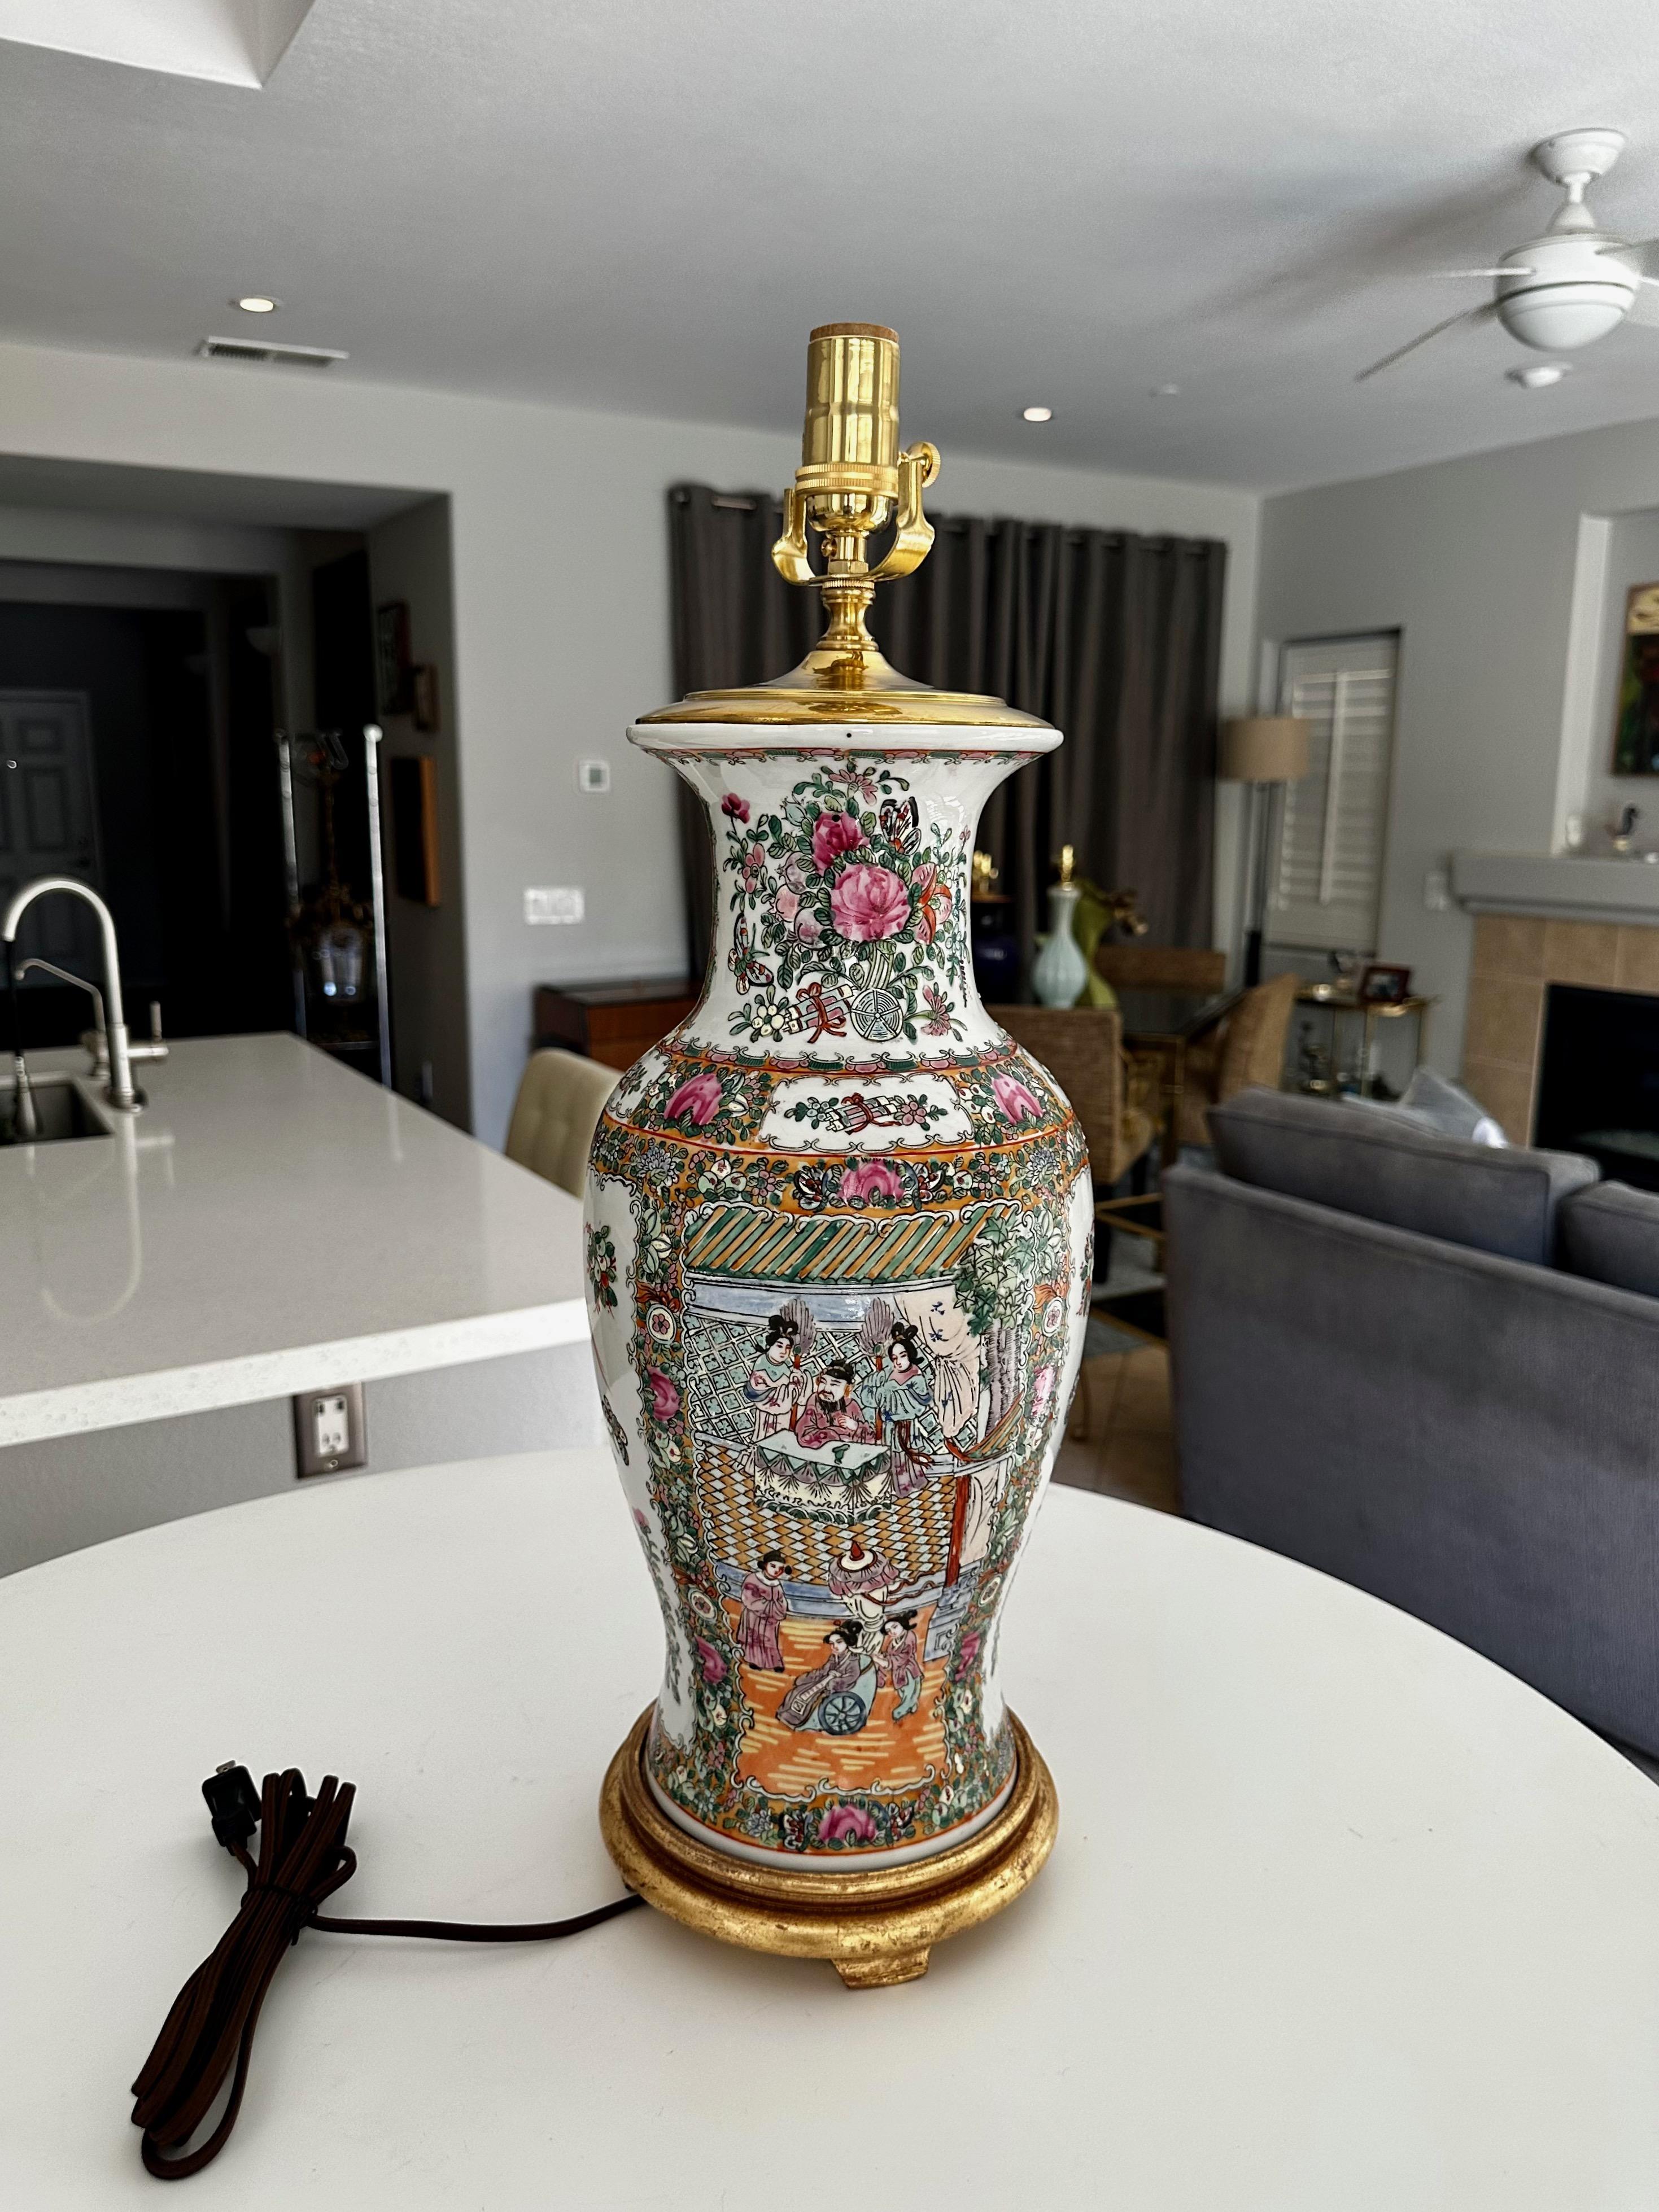 Vase Famille rose en porcelaine chinoise monté en lampe de table, base tournée en bois doré. Magnifiquement réalisé avec des images peintes de couleurs vives, dont la scène de la cour de l'empereur, des papillons, des oiseaux et des fleurs. Le